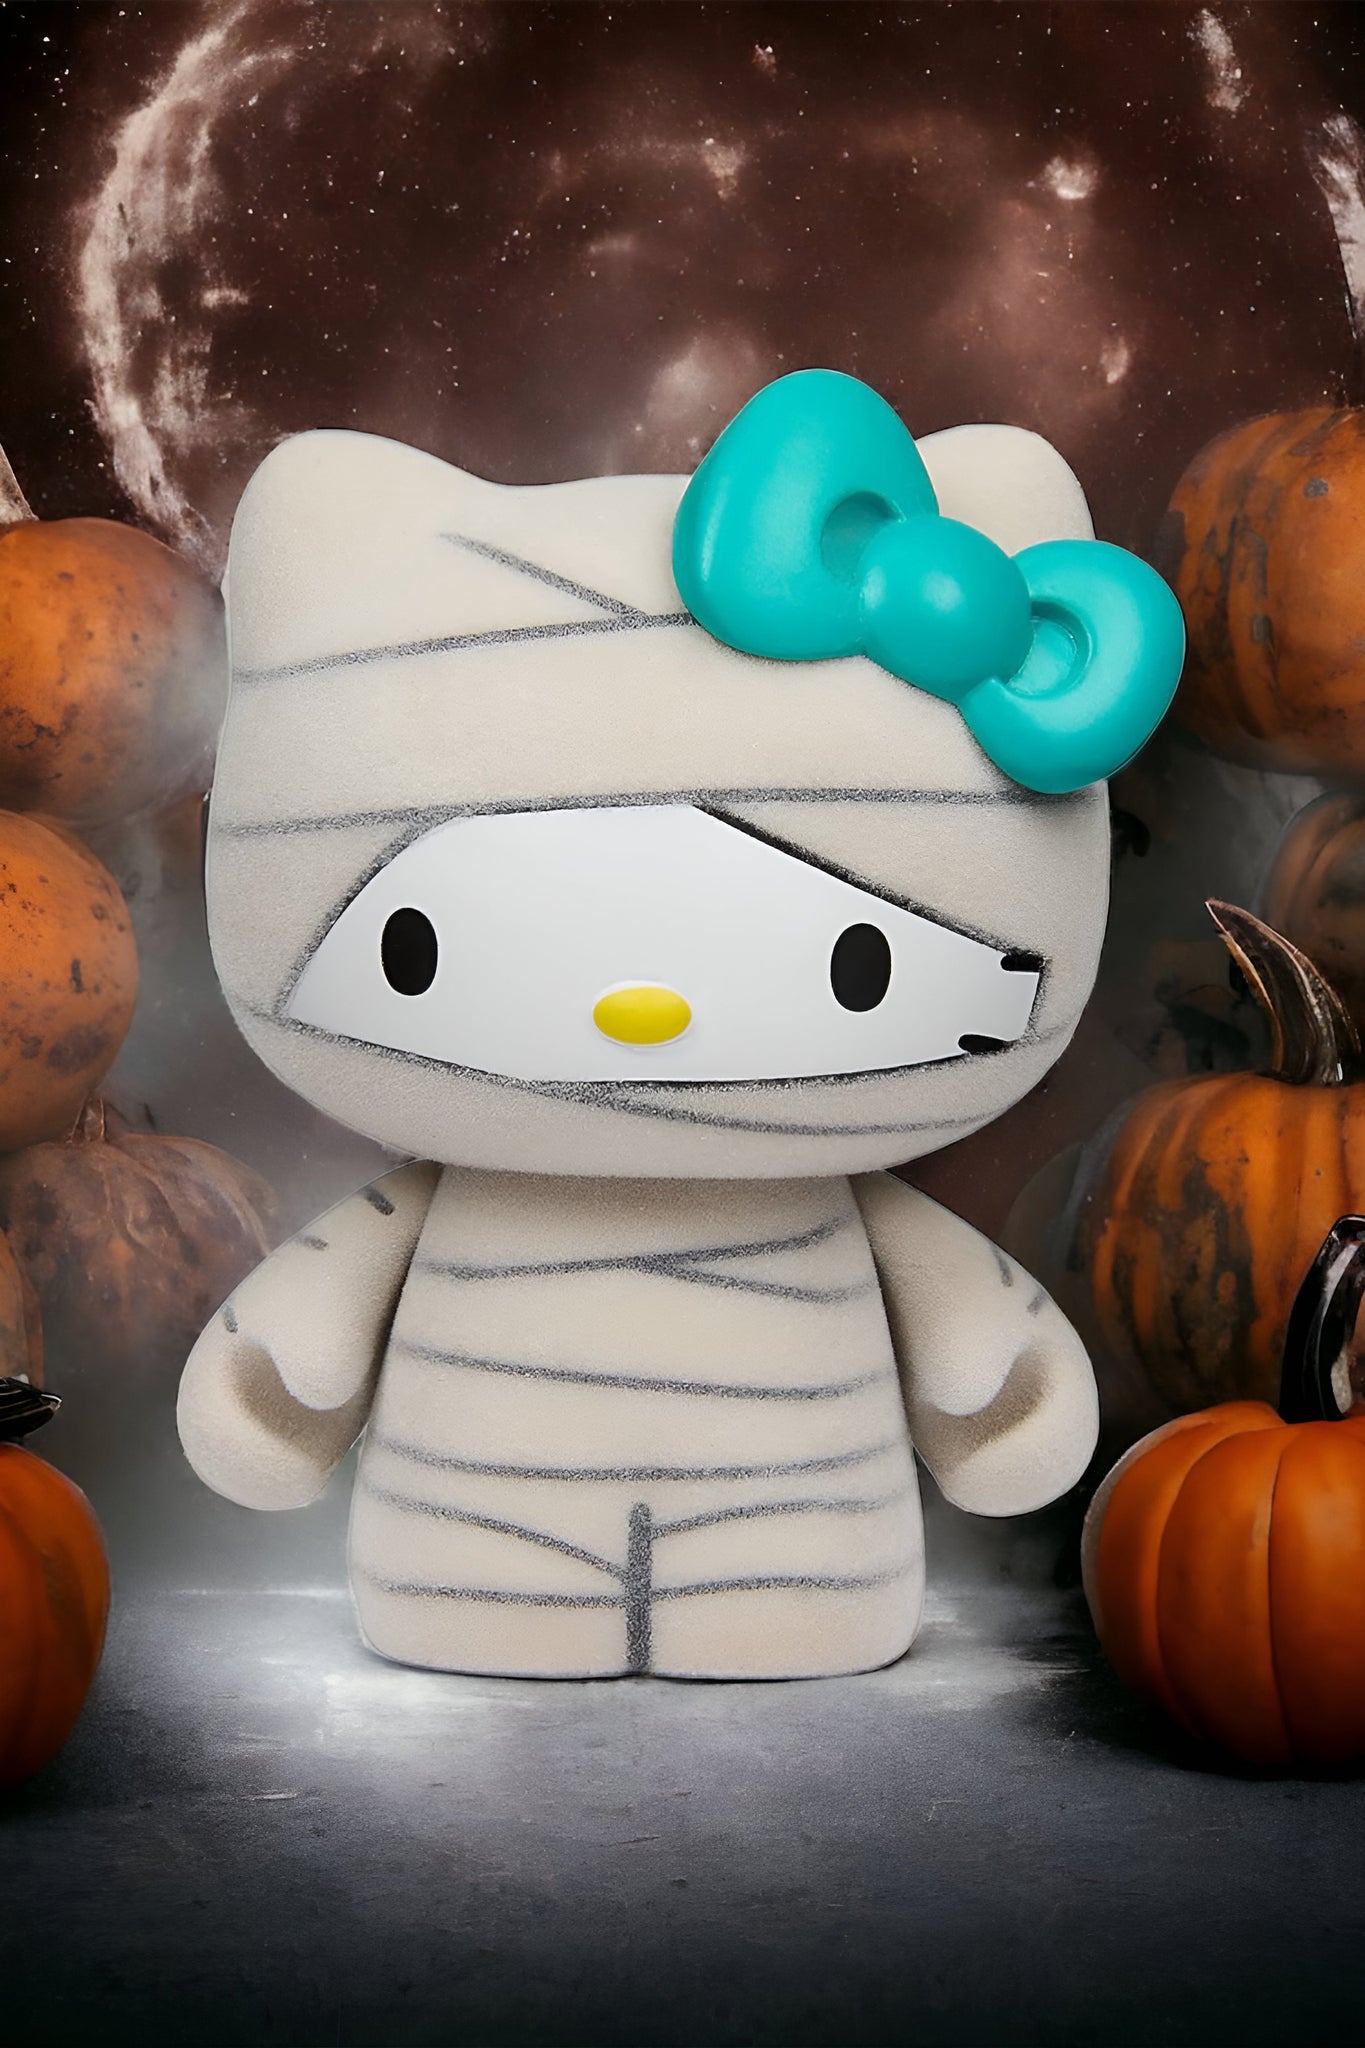 Hello Kitty® Halloween Costumes Collectible Vinyl Mini Figures